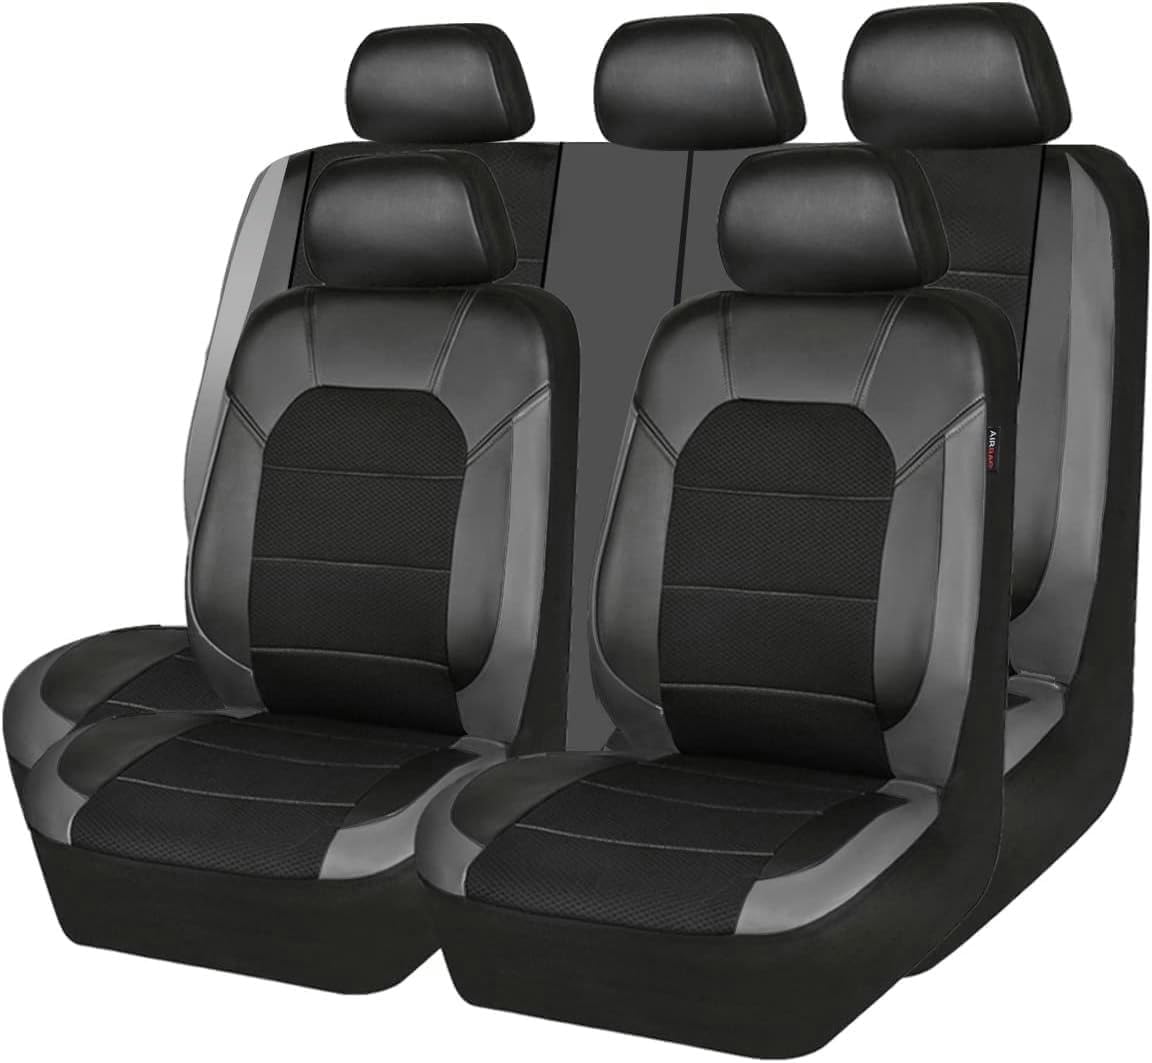 JOSKAA Autositzbezüge Universal passend für Mercedes Benz C200 C180 C220 C300 C350 C200K C250 C280 C450 G350D G500 A160 B180 B200 B260 Sitzbezug-Sets von JOSKAA